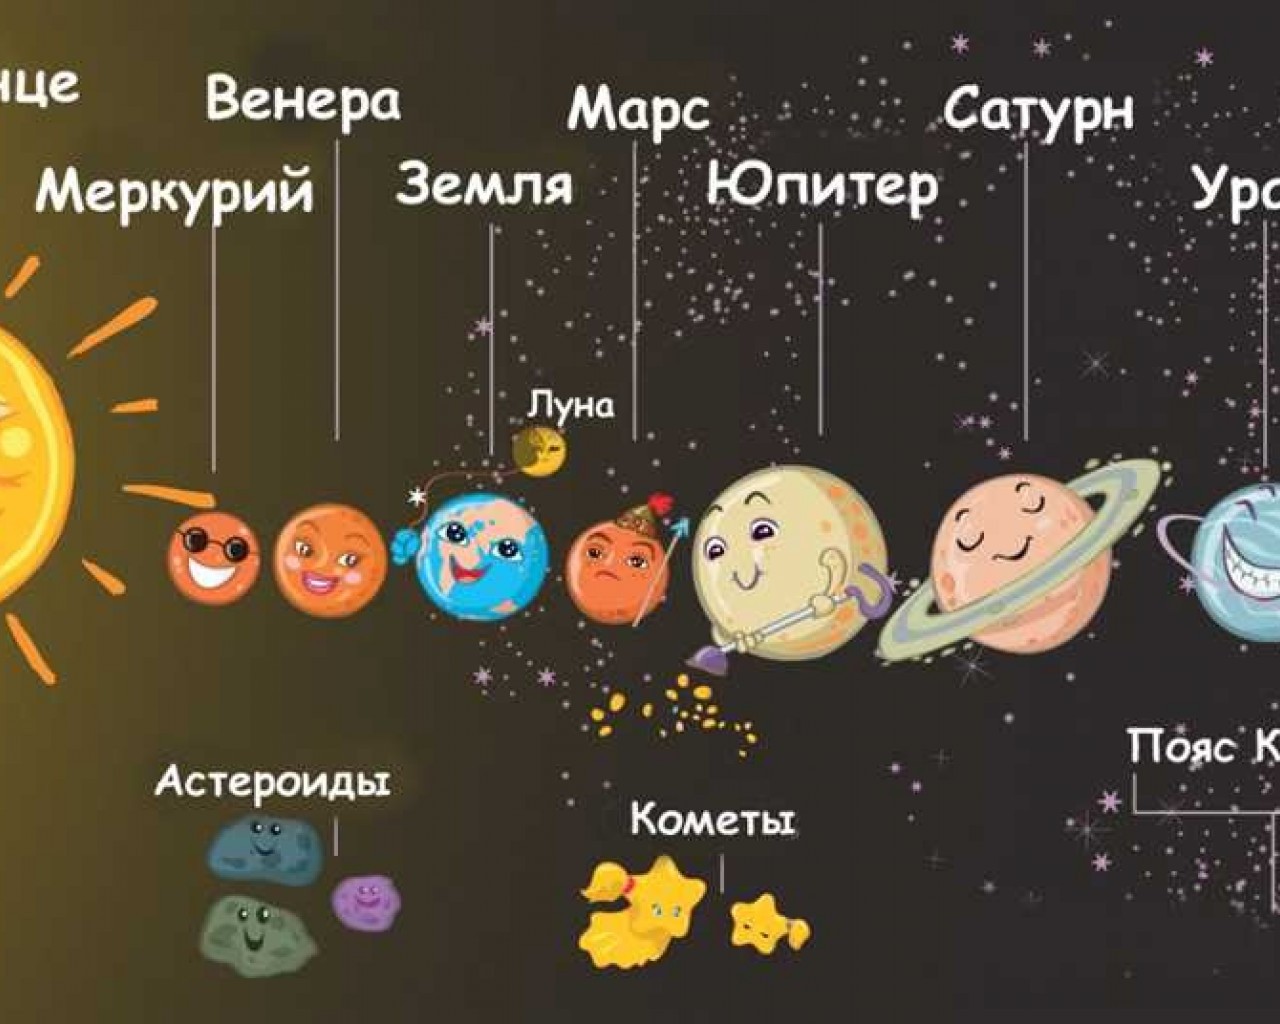 Сколько планет находится в солнечной системе и почему количество планет очень важно для нашего понимания Вселенной